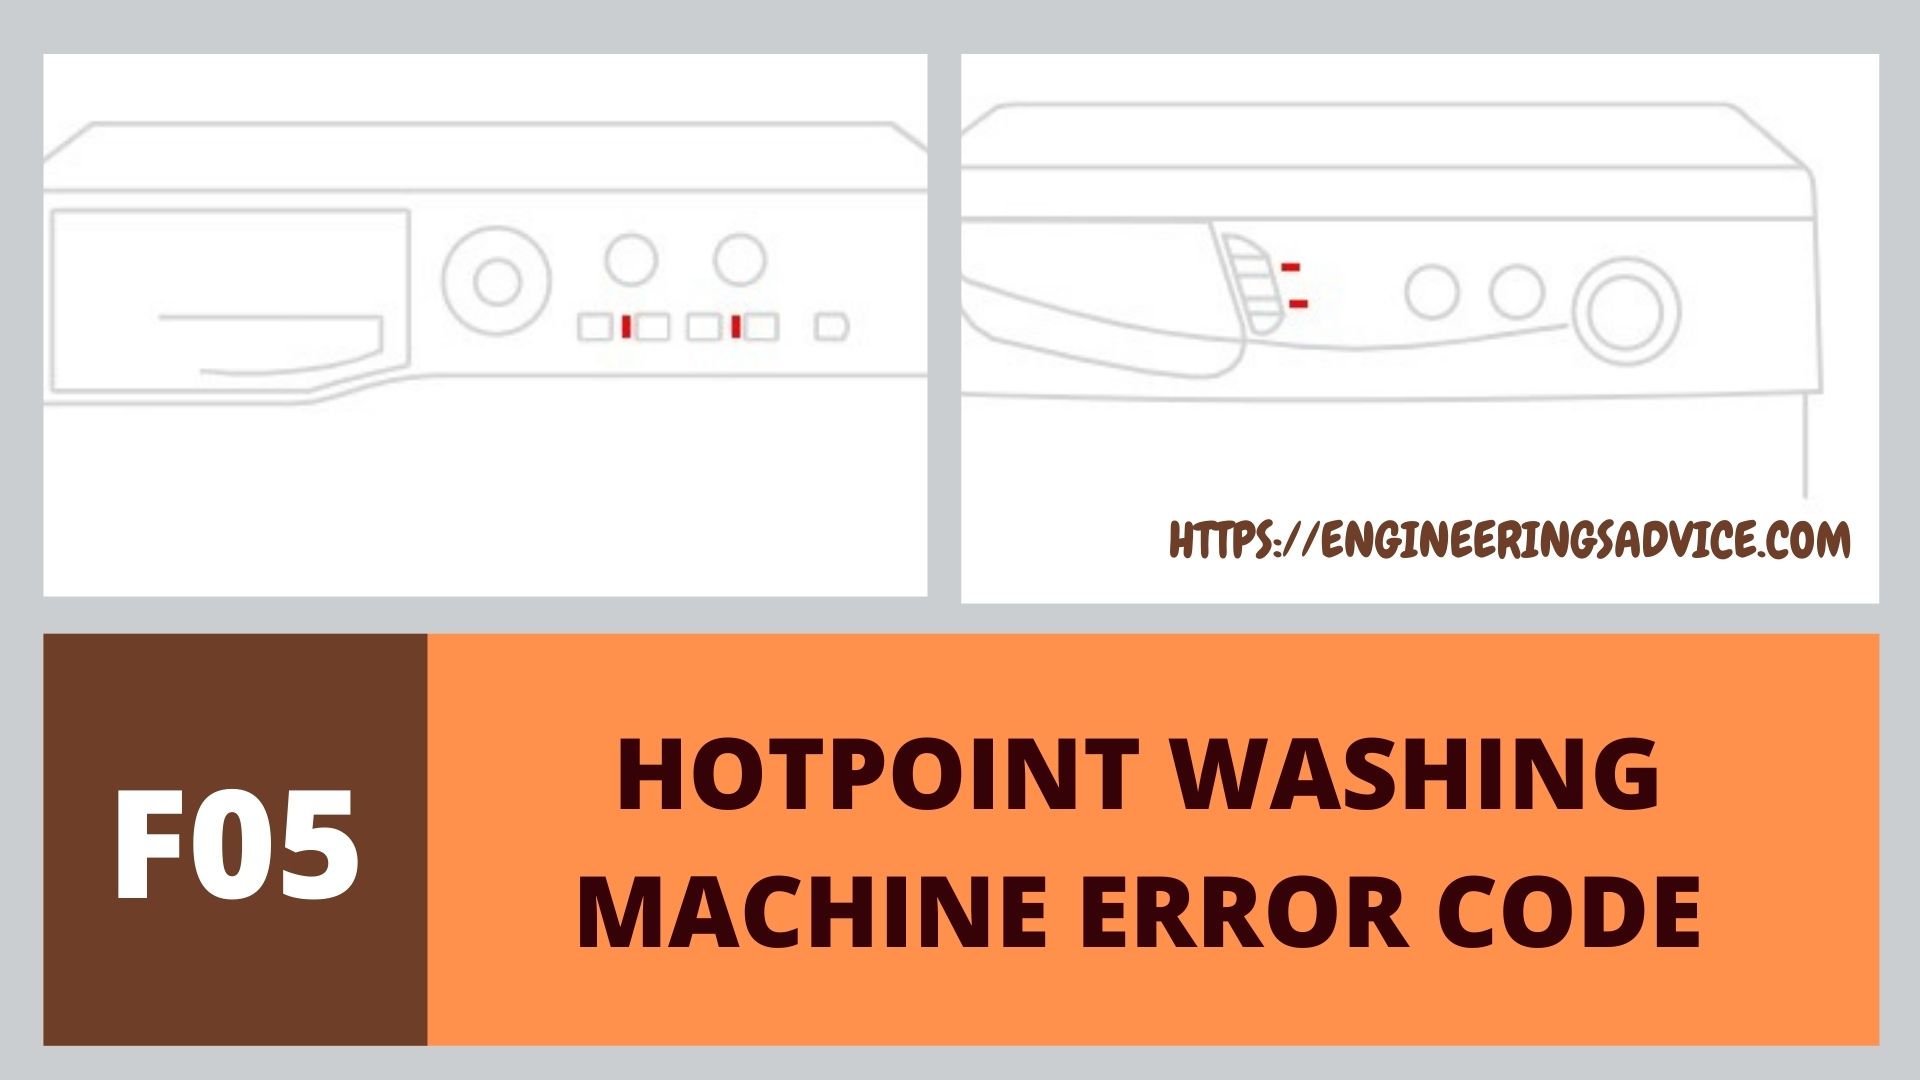 f05 hotpoint washing machine error codes